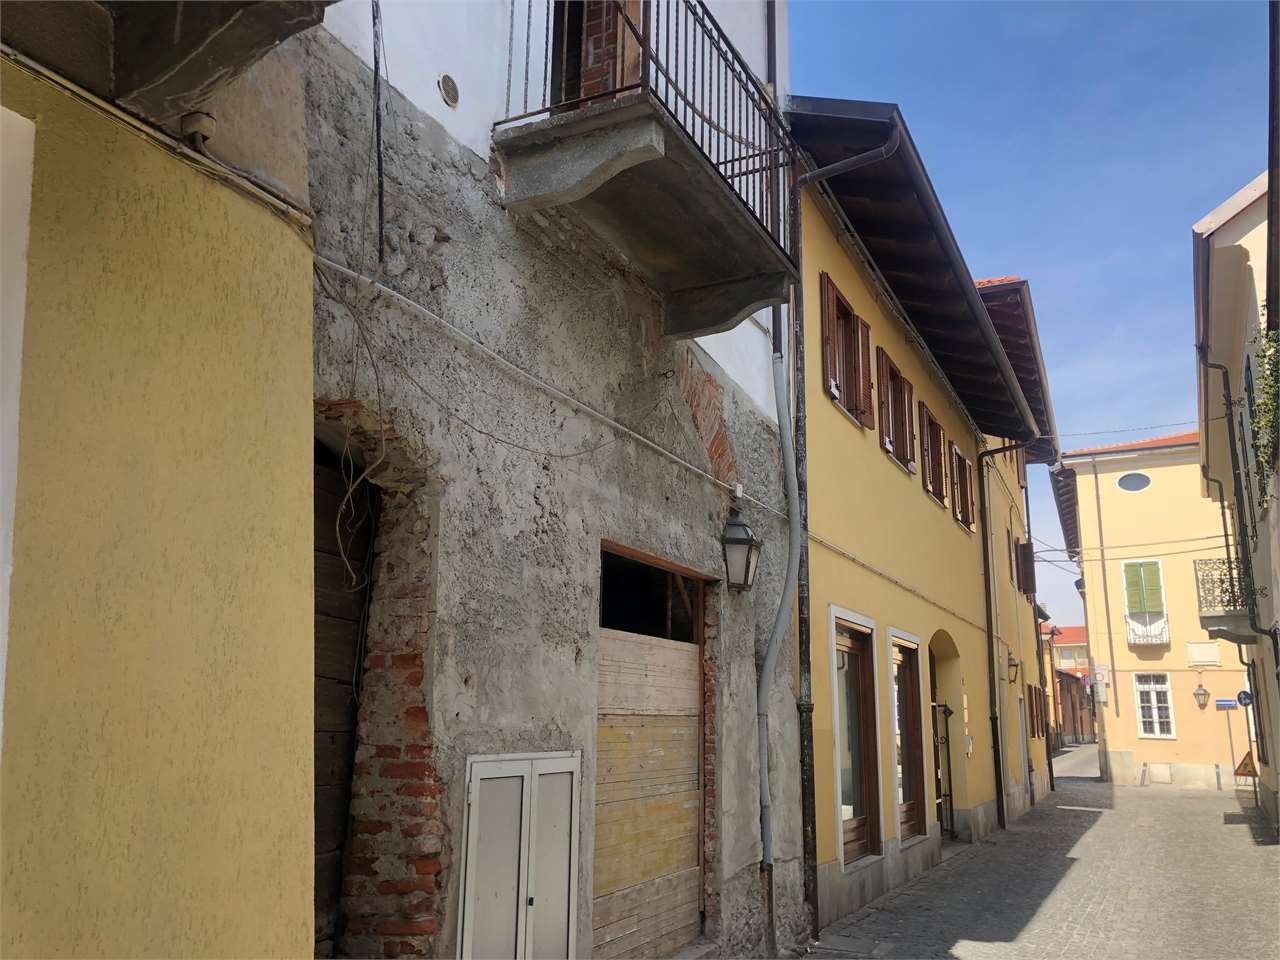 Rustico / Casale in vendita a Ciriè, 7 locali, zona Località: Centrale, prezzo € 125.000 | CambioCasa.it